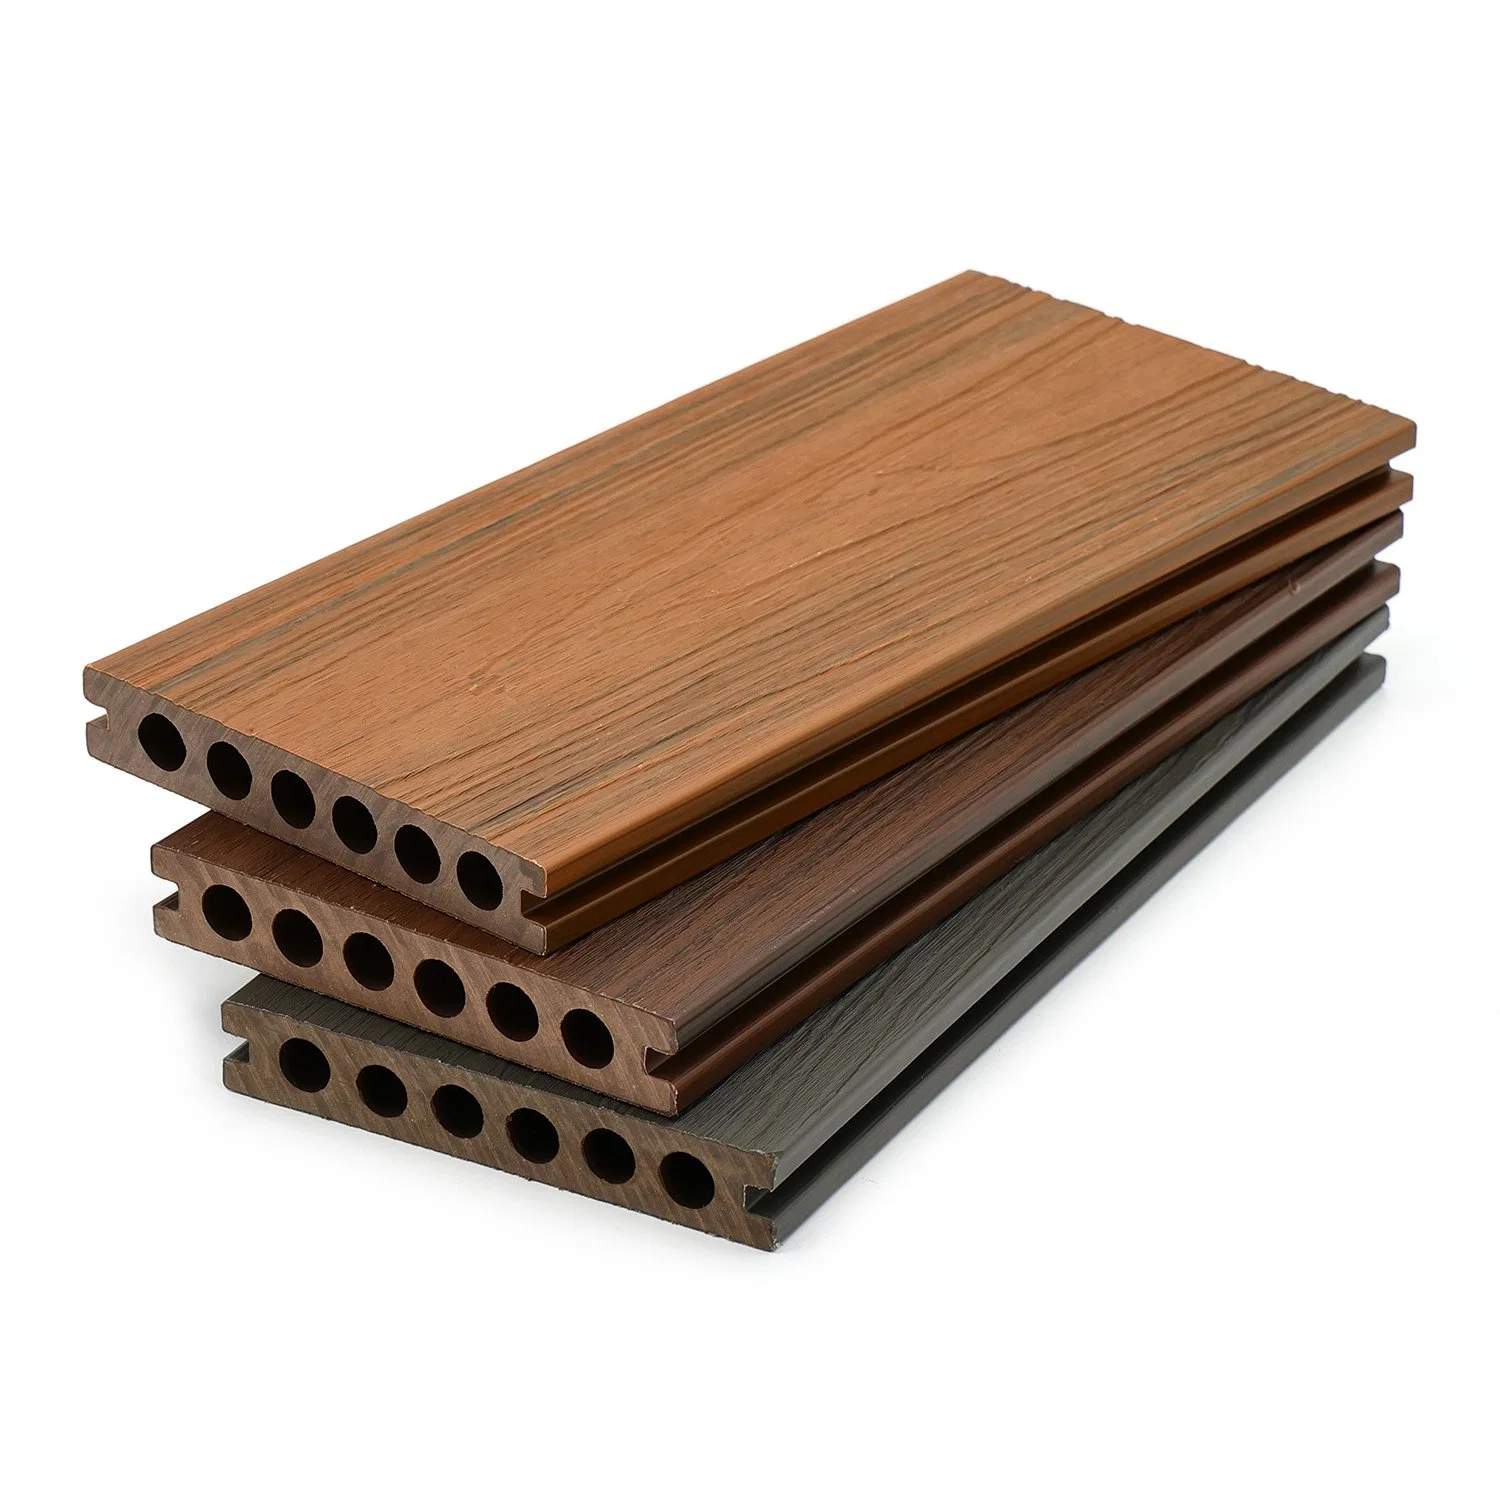 Plancher de terrasse en composite bois-plastique (WPC) pour l'extérieur, planche de revêtement étanche.